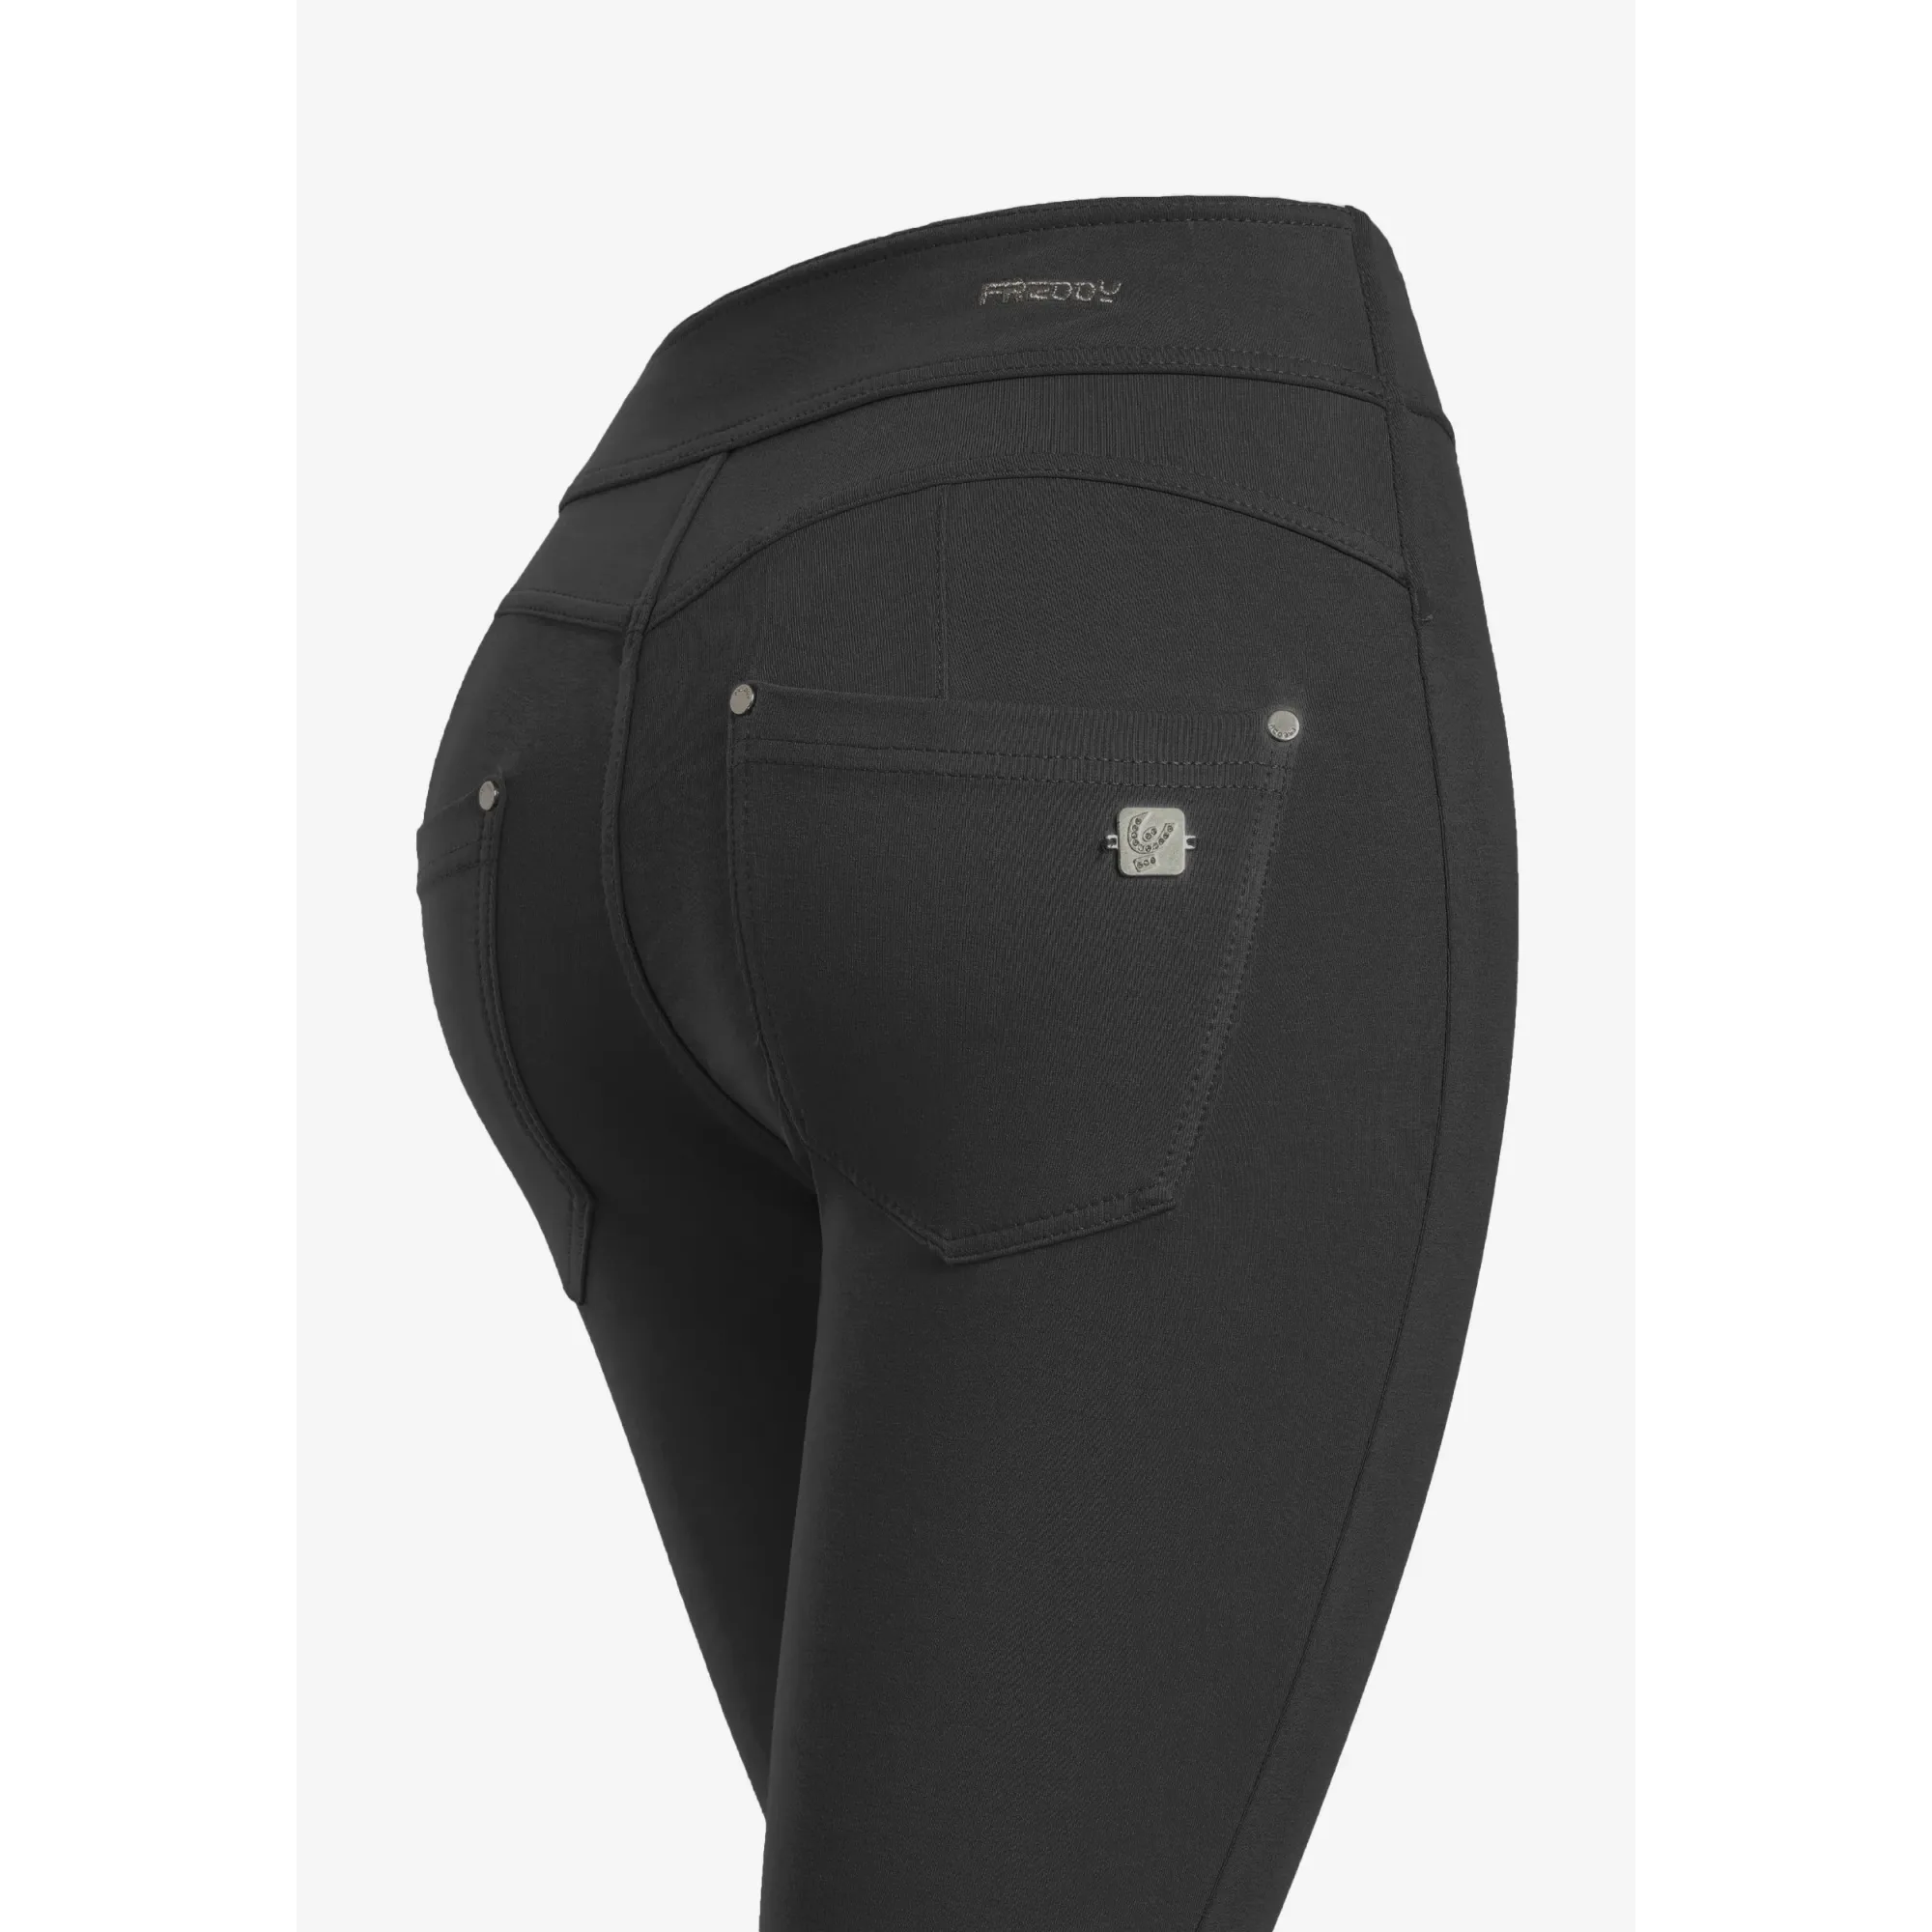 Freddy N.O.W.® Yoga Eco Damen Comfort Hose - Super High Waist Skinny - Mit Nähten auf den Beinen - Schwarz